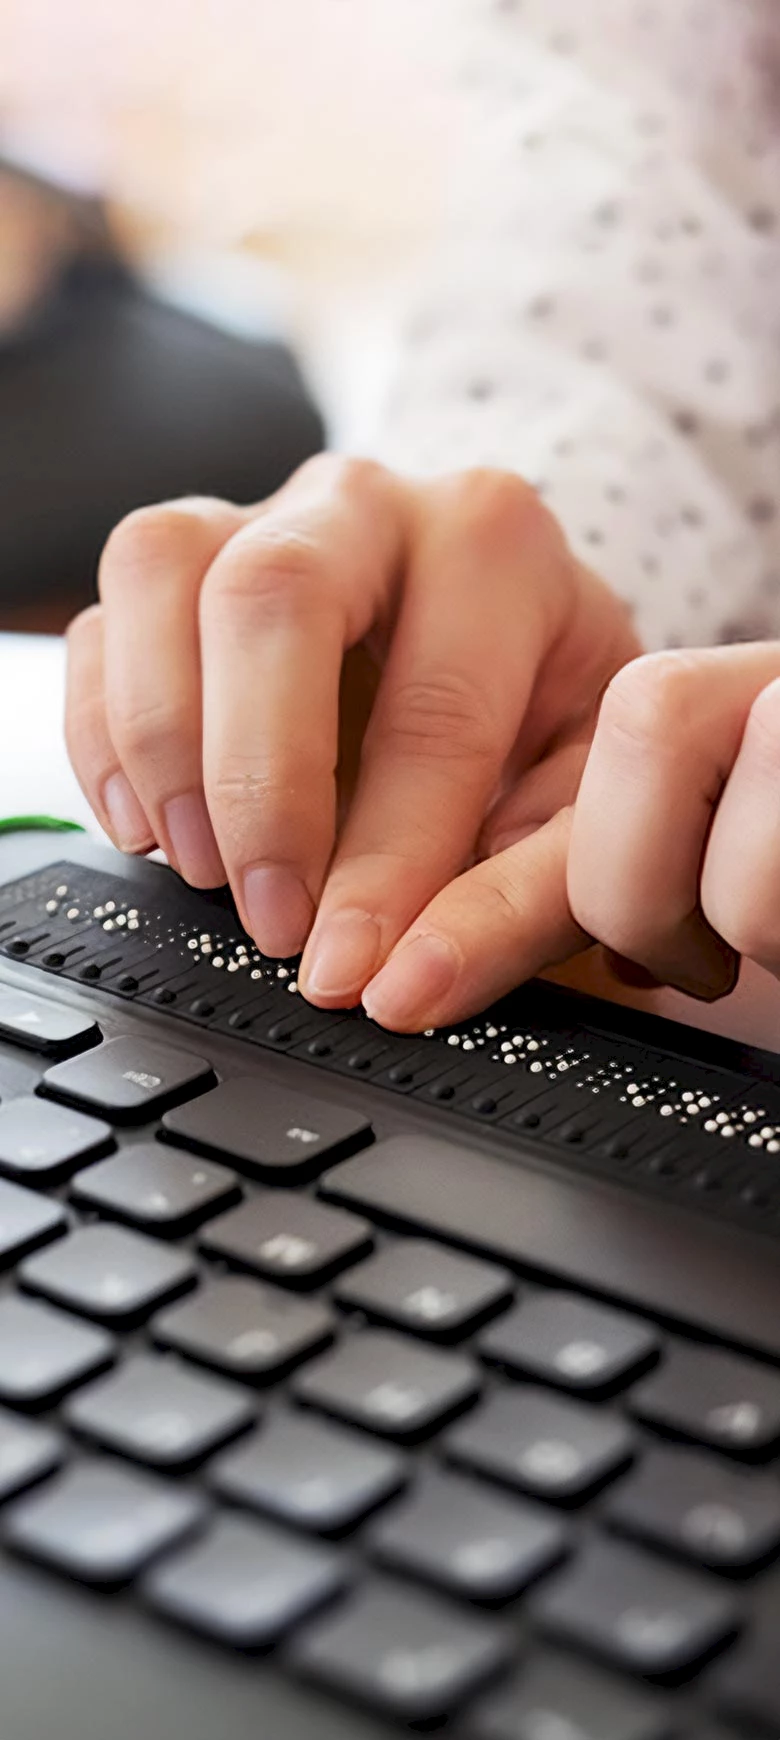 Hände, die einen Computer mit Tastatur und Braillezeile bedienen